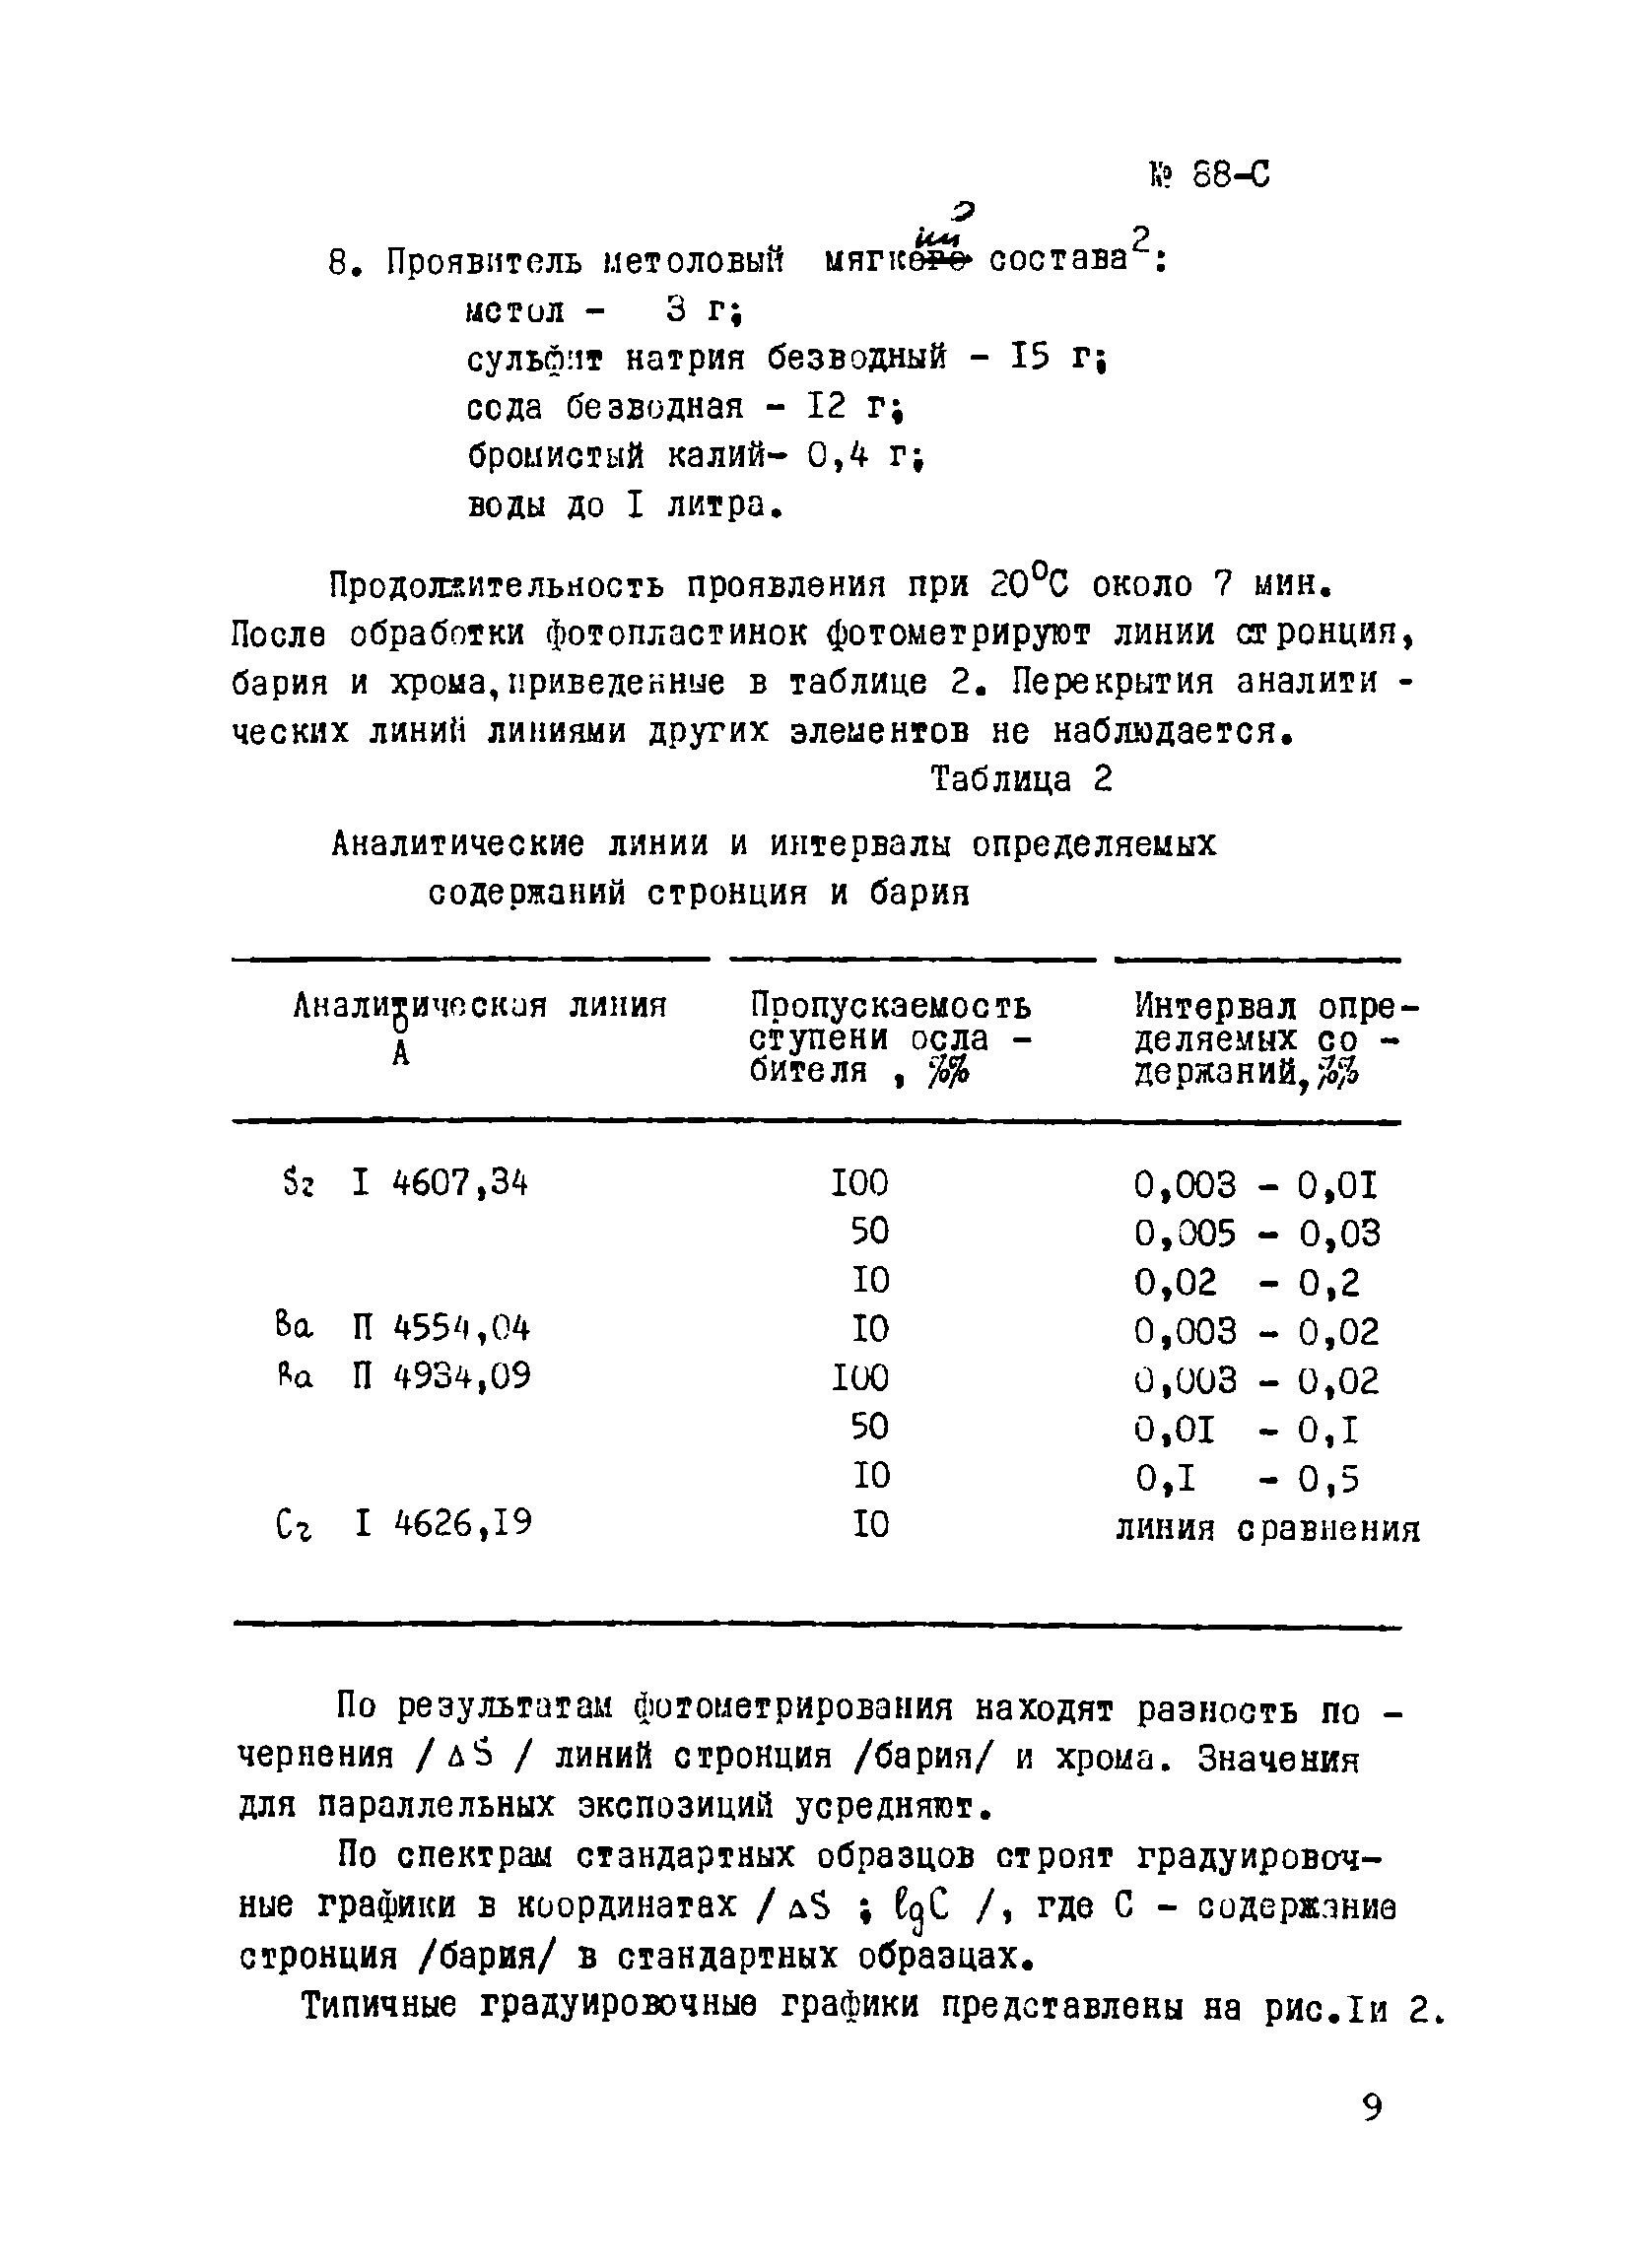 Инструкция НСАМ 88-С